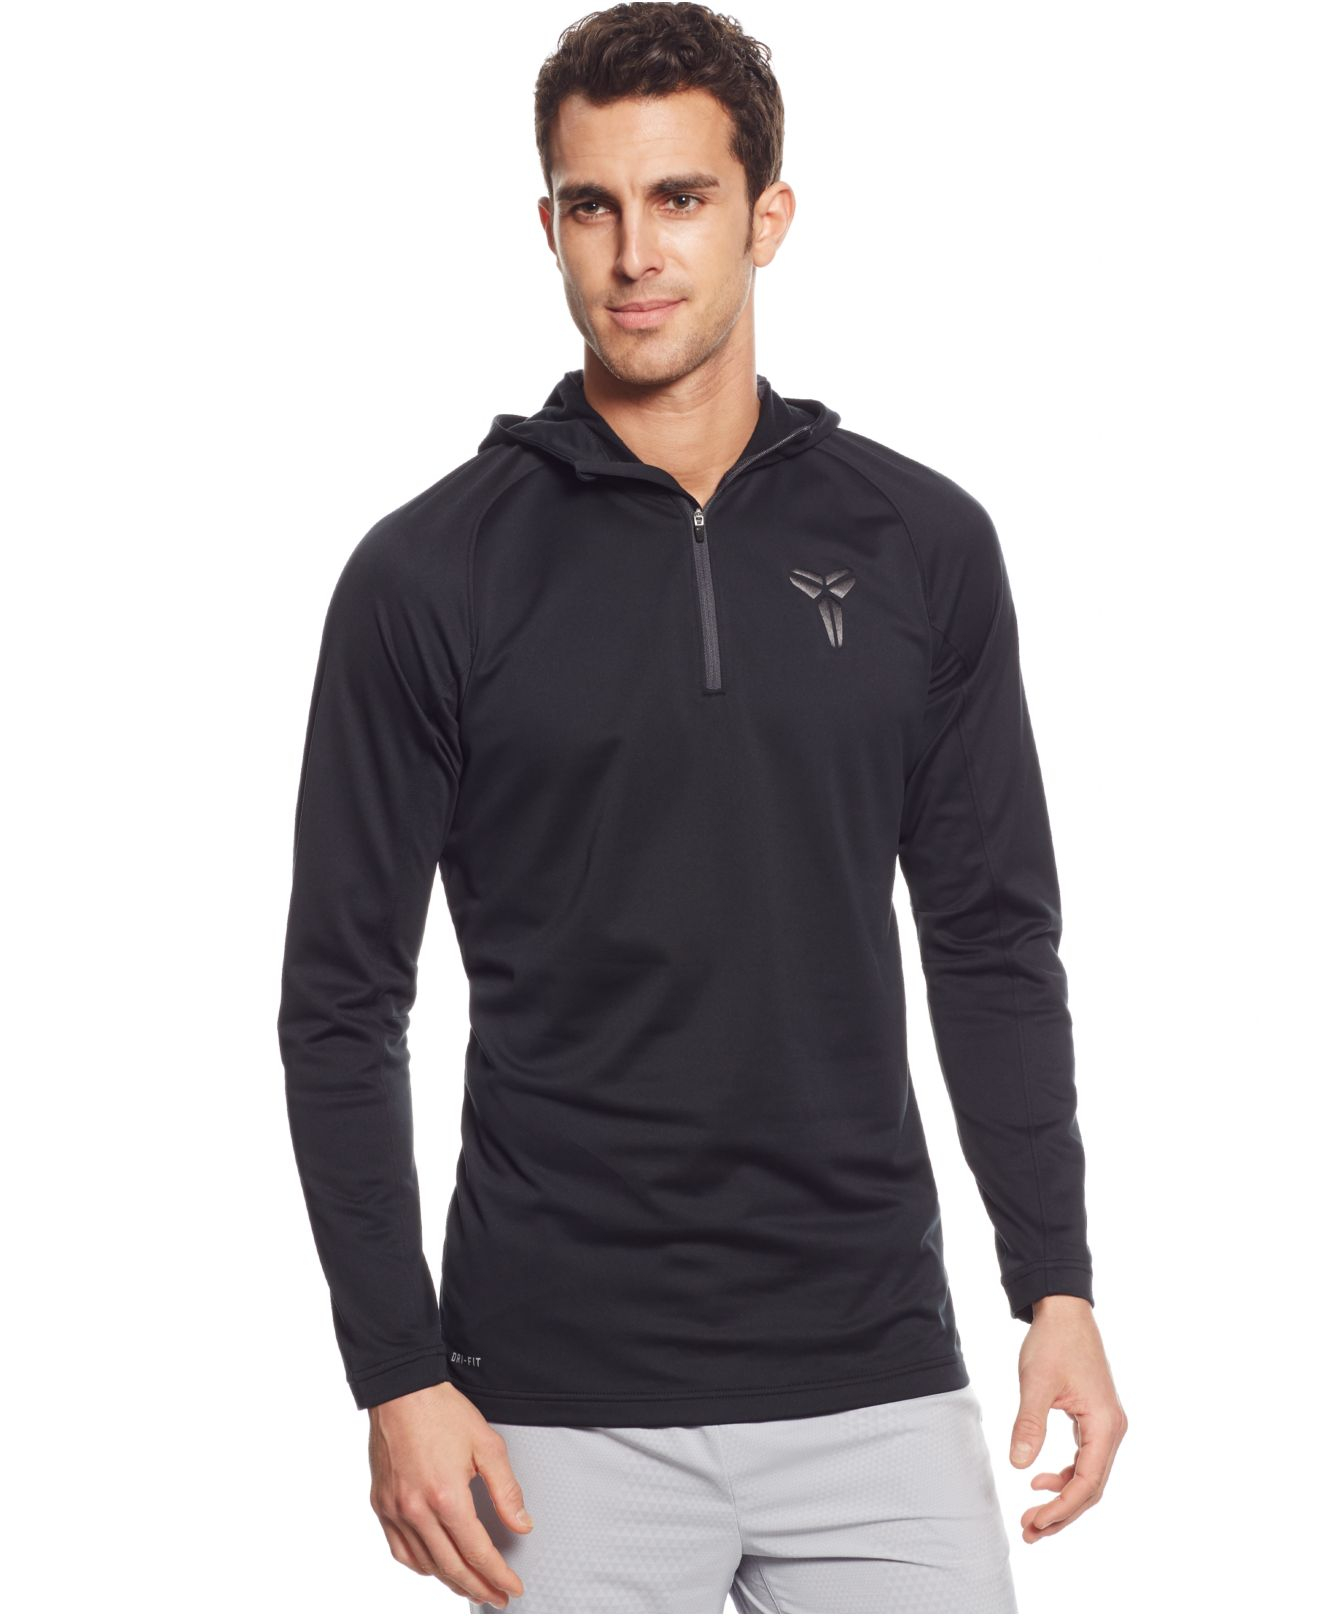 Nike Synthetic Kobe Emerge Dri-fit Quarter-zip Pullover Hoodie in Black ...